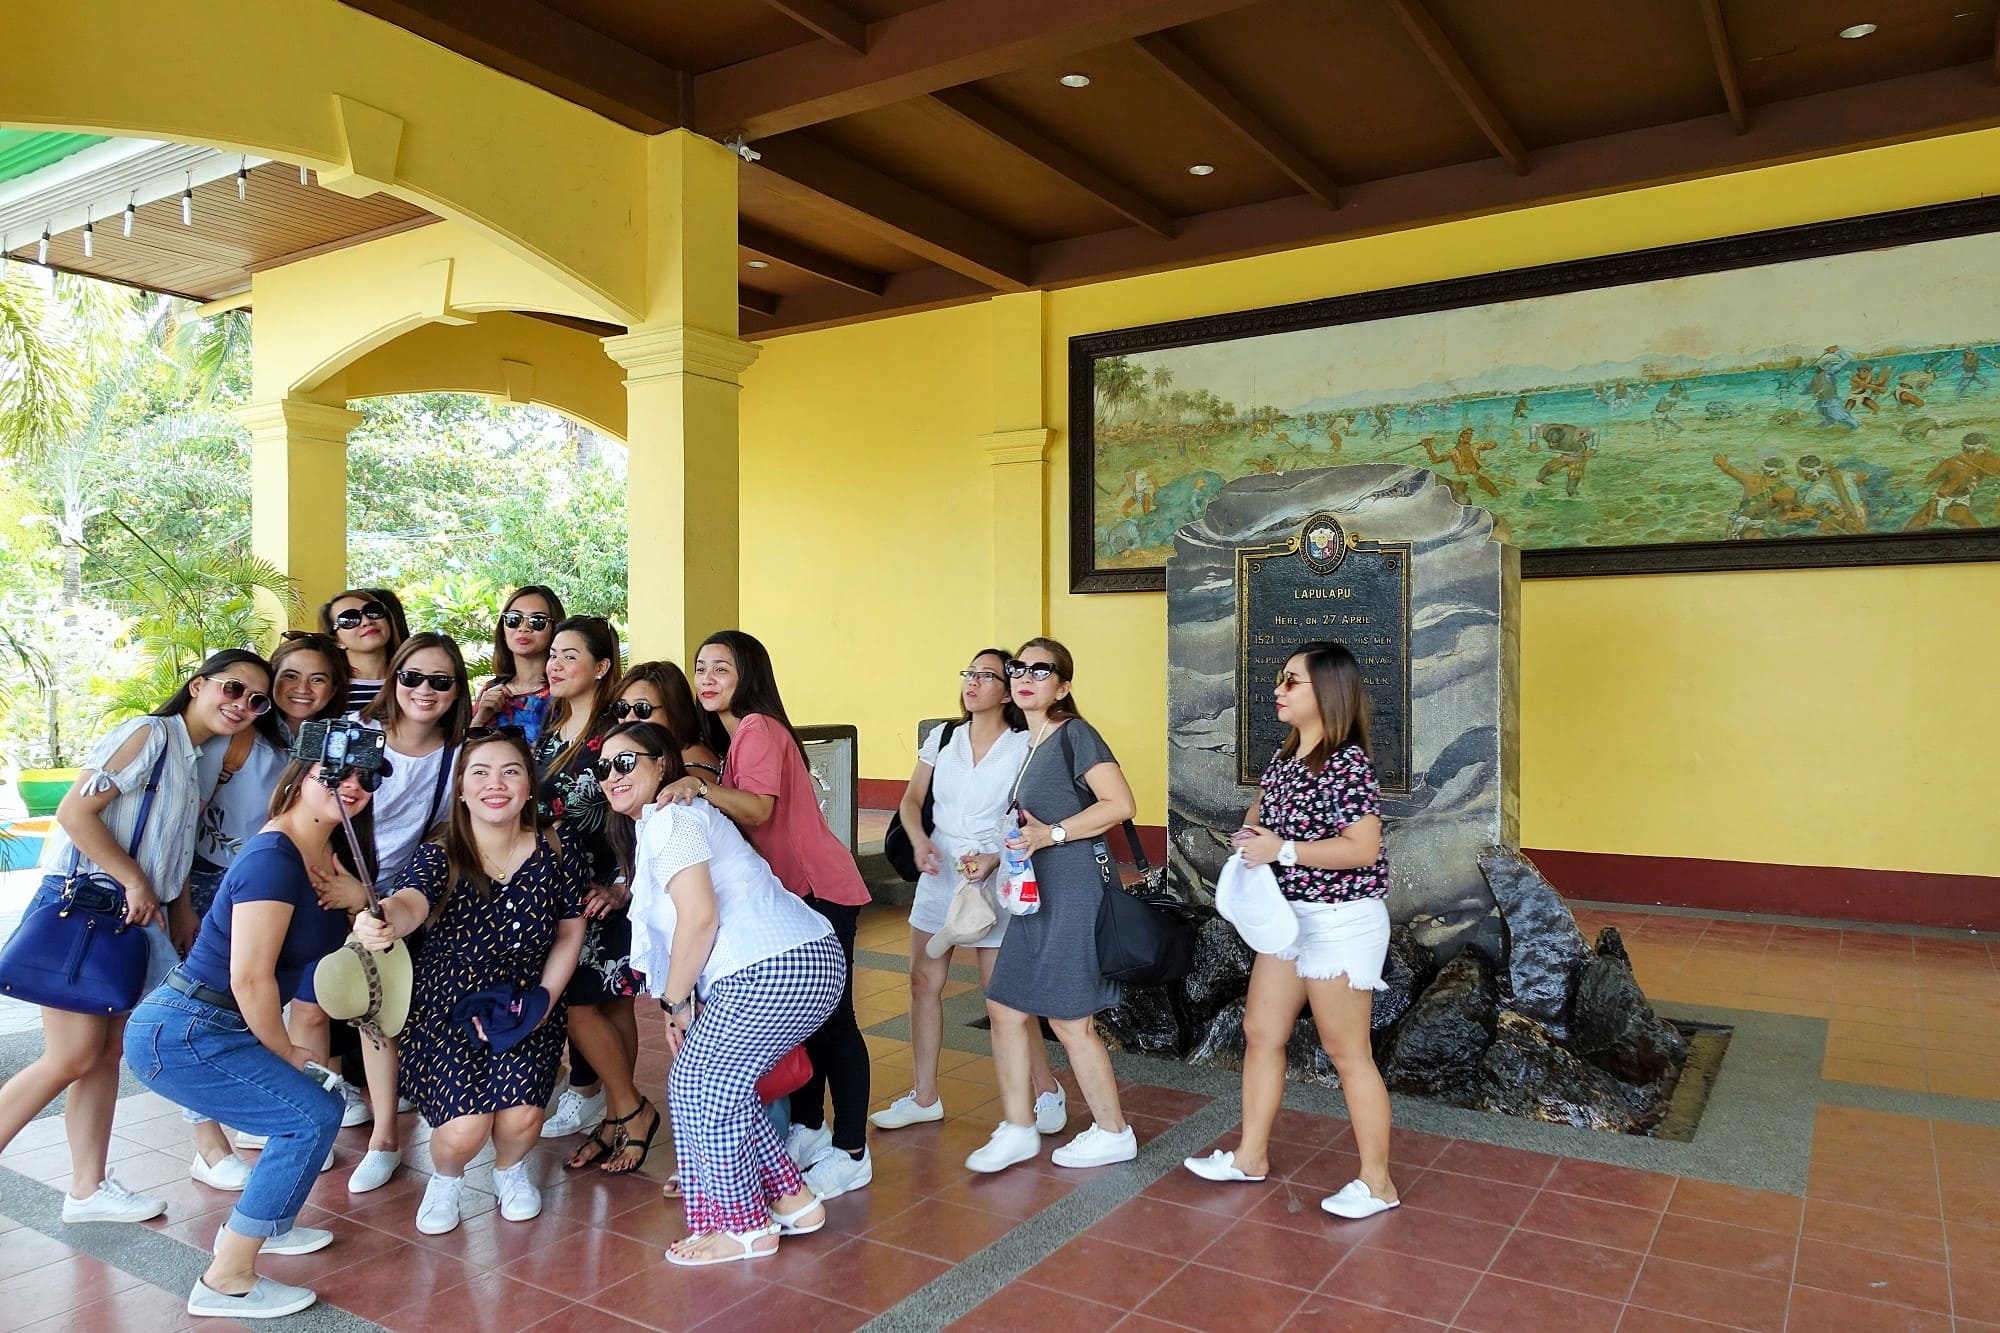 マクタンシュラインの戦勝の碑前で記念撮影をするフィリピン人観光客